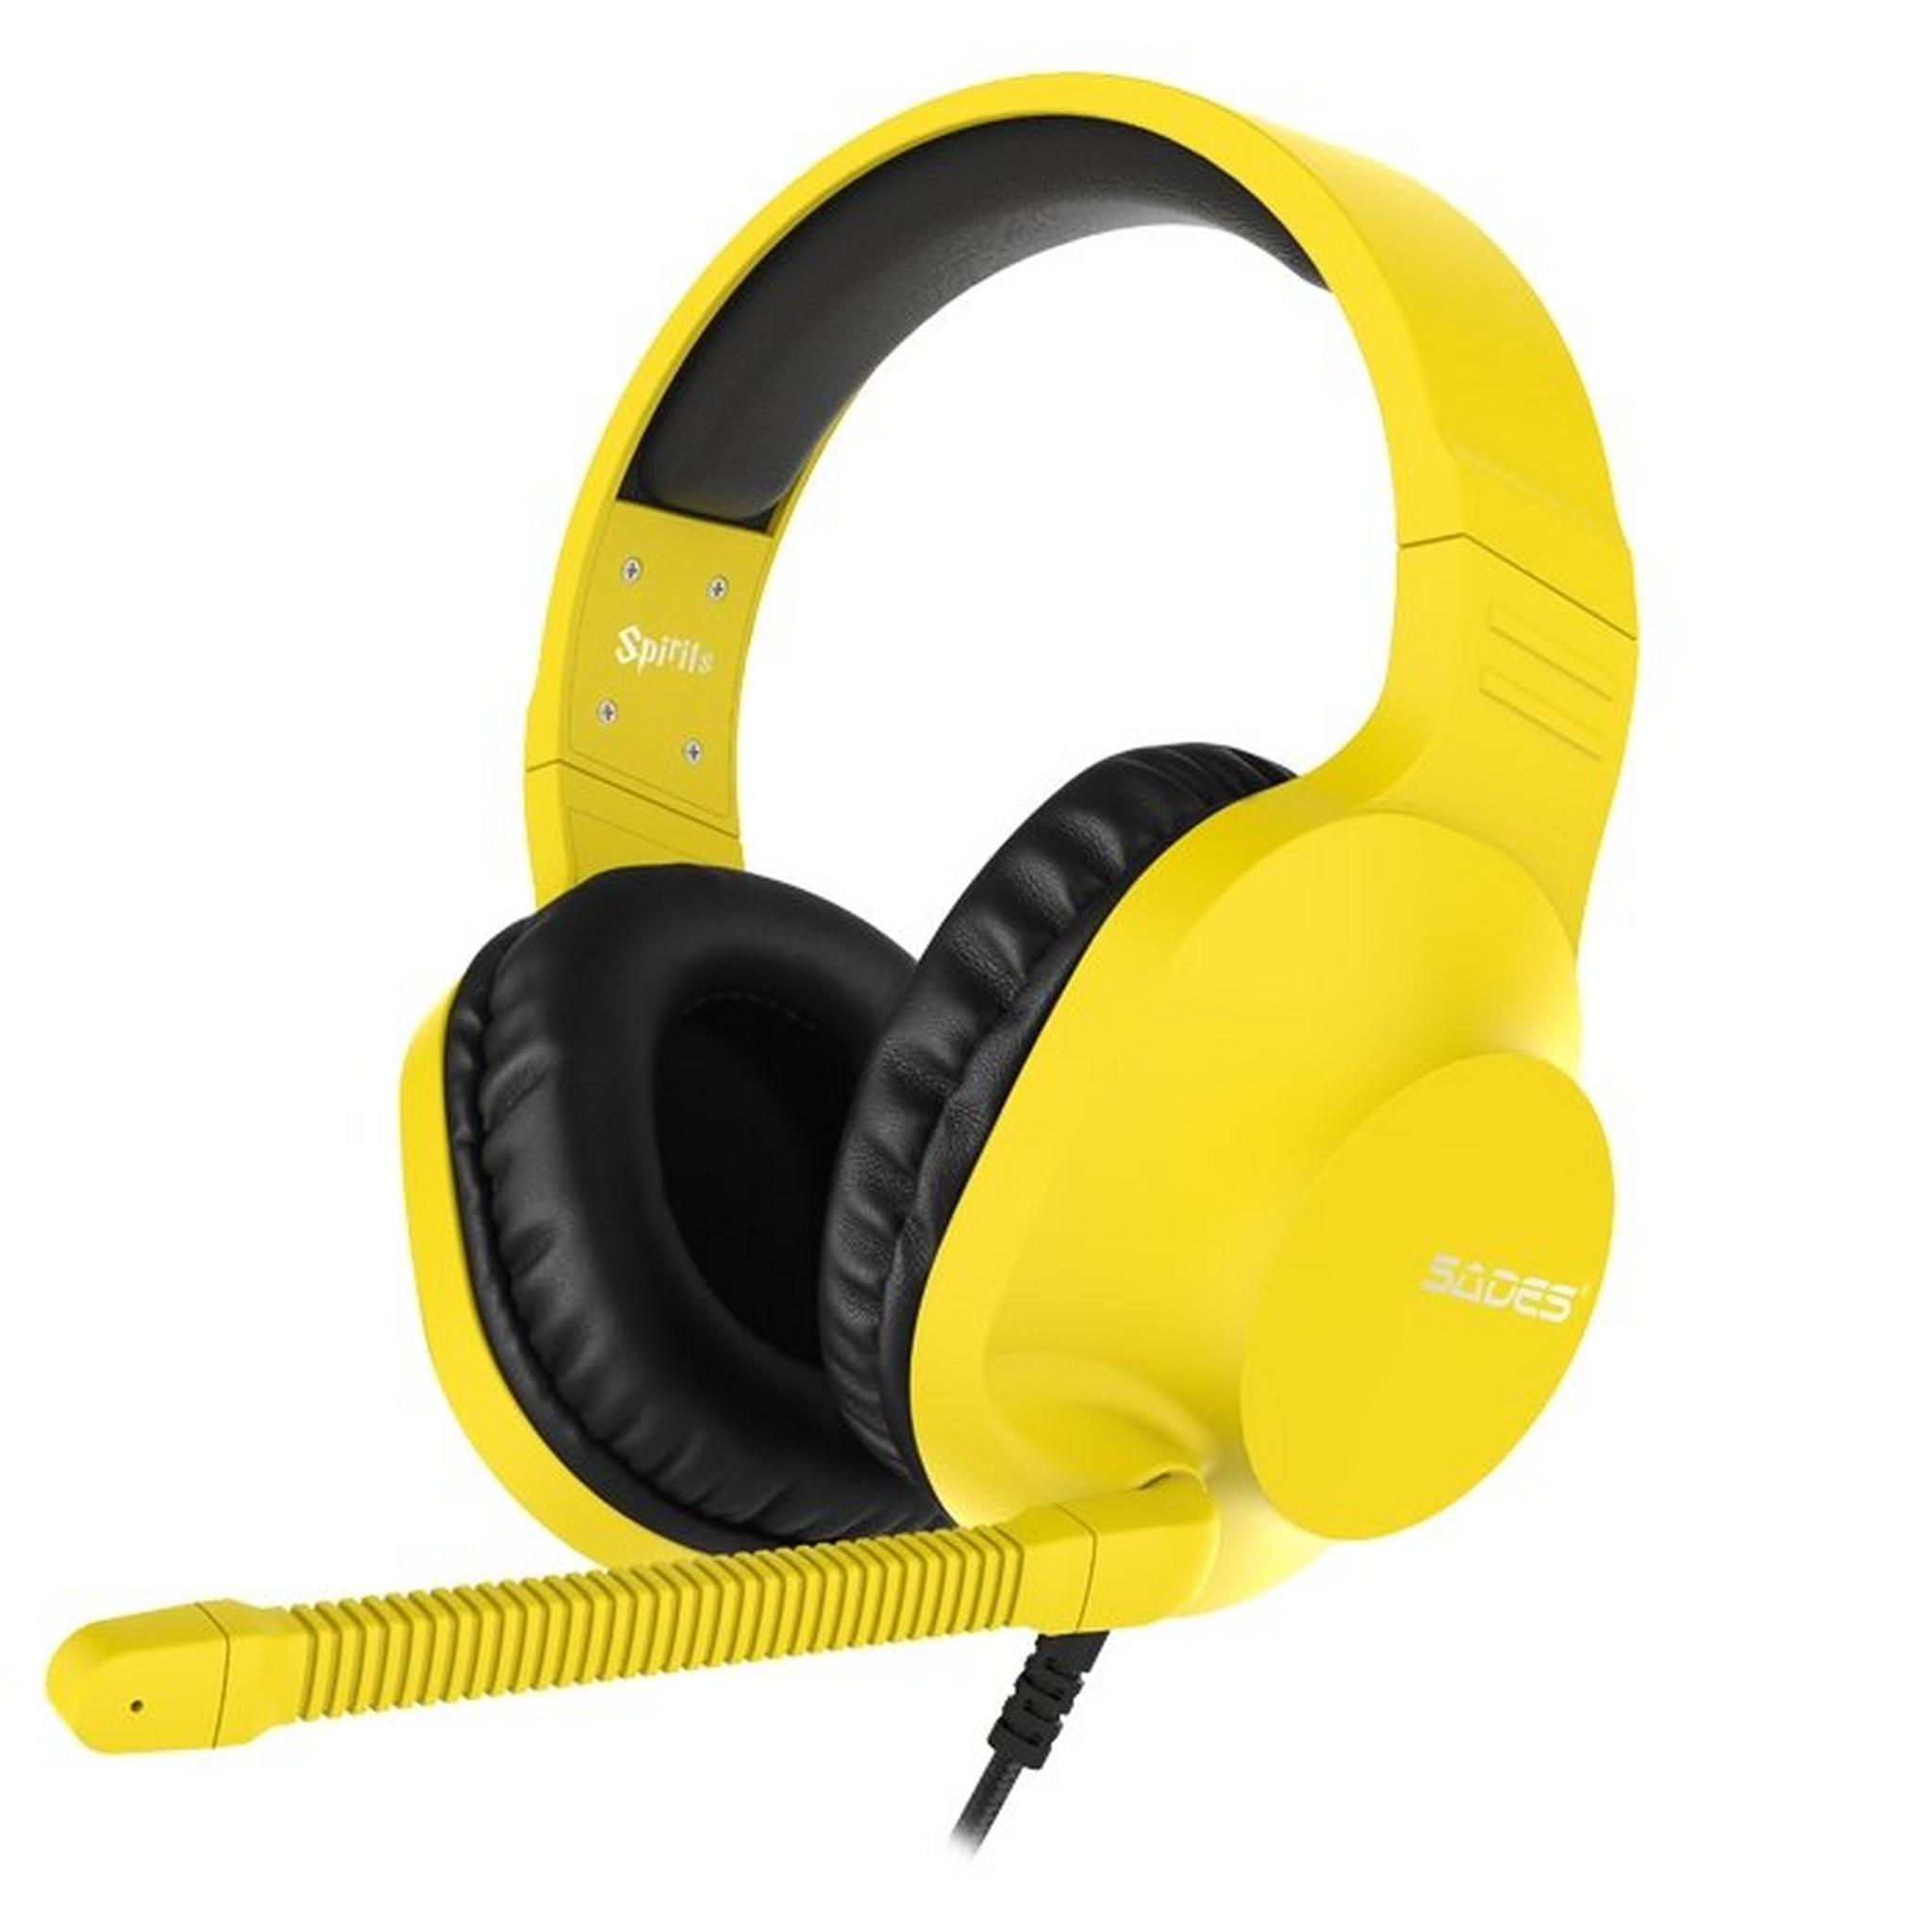 Sades Spirits SA721 Gaming Headset - Yellow